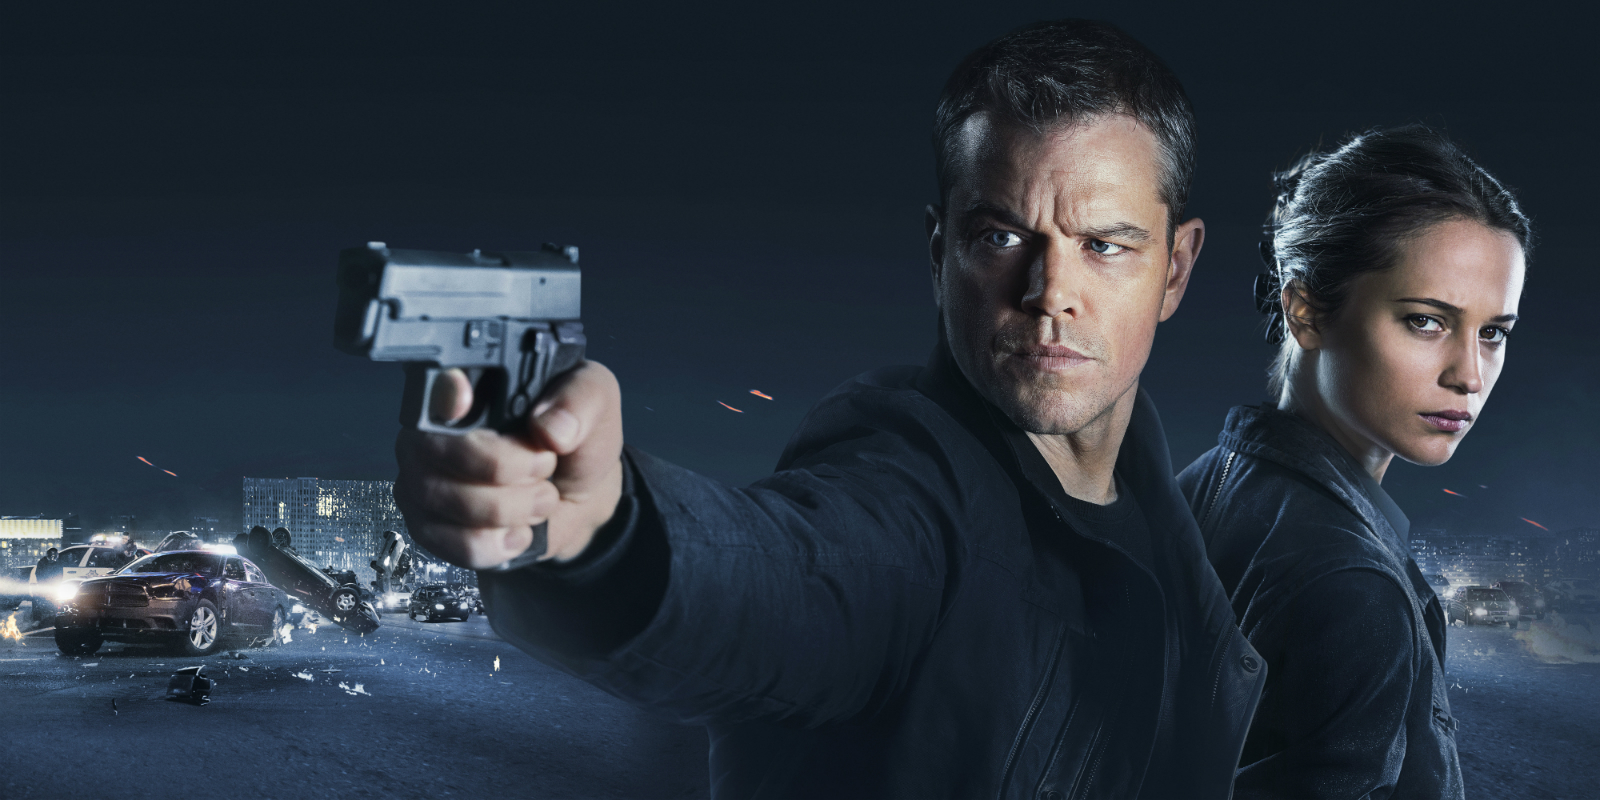 Jason Bourne Backgrounds, Compatible - PC, Mobile, Gadgets| 1600x800 px